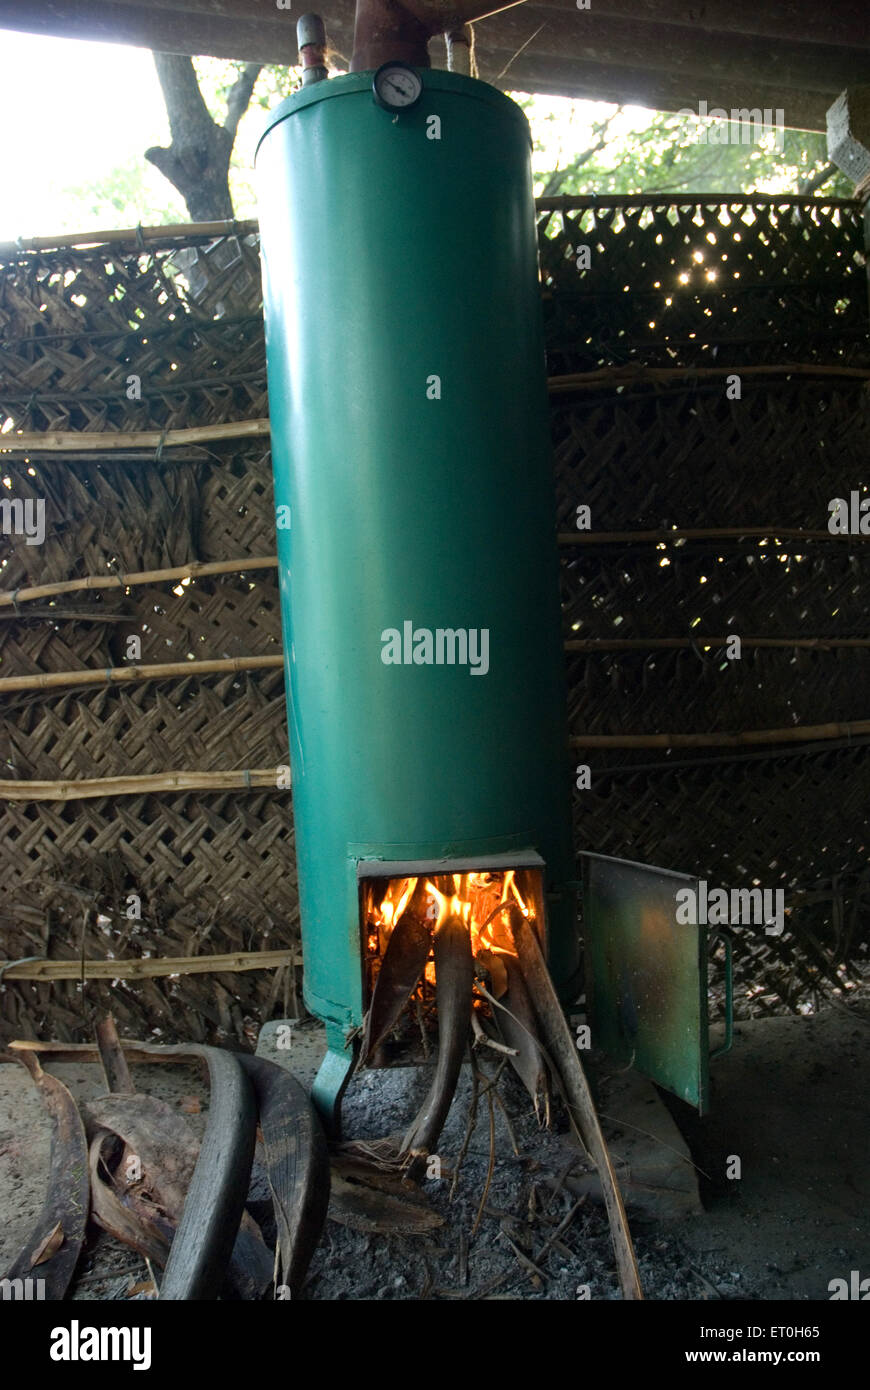 https://c8.alamy.com/comp/ET0H65/old-wood-burning-water-heater-old-wood-fired-water-heater-bordi-palghar-ET0H65.jpg